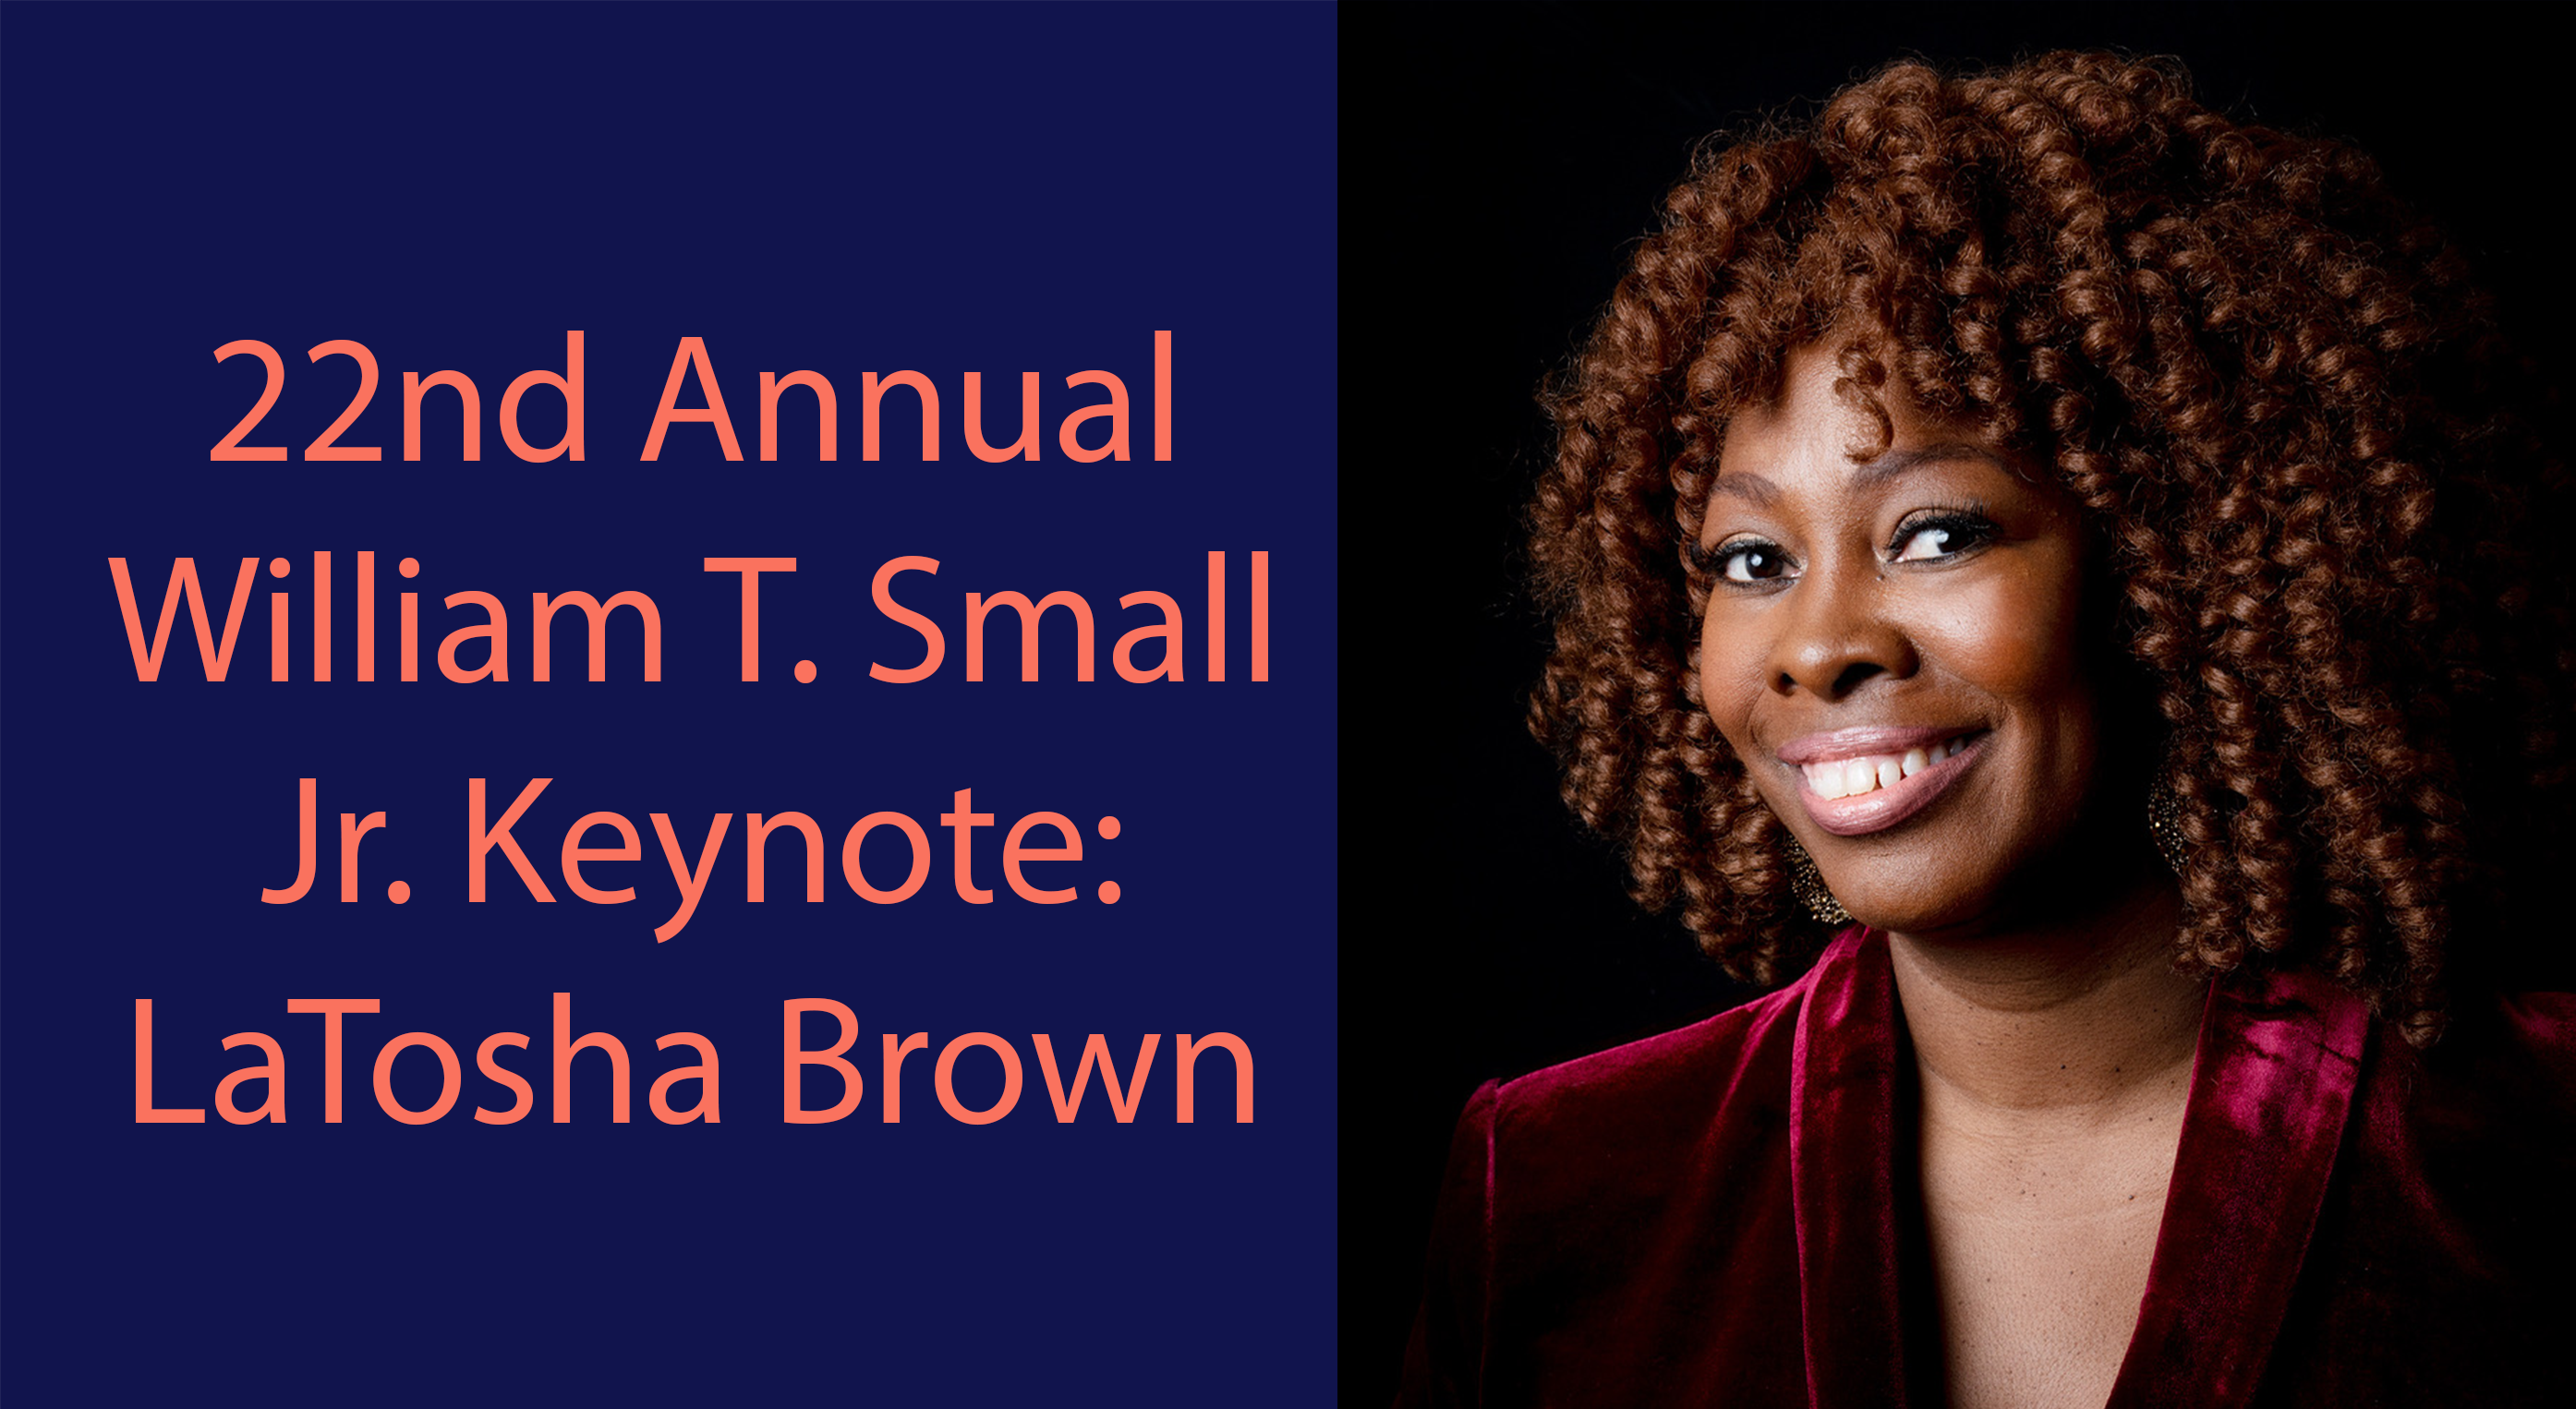 22nd Annual William T. Small Jr. Keynote: LaTosha Brown